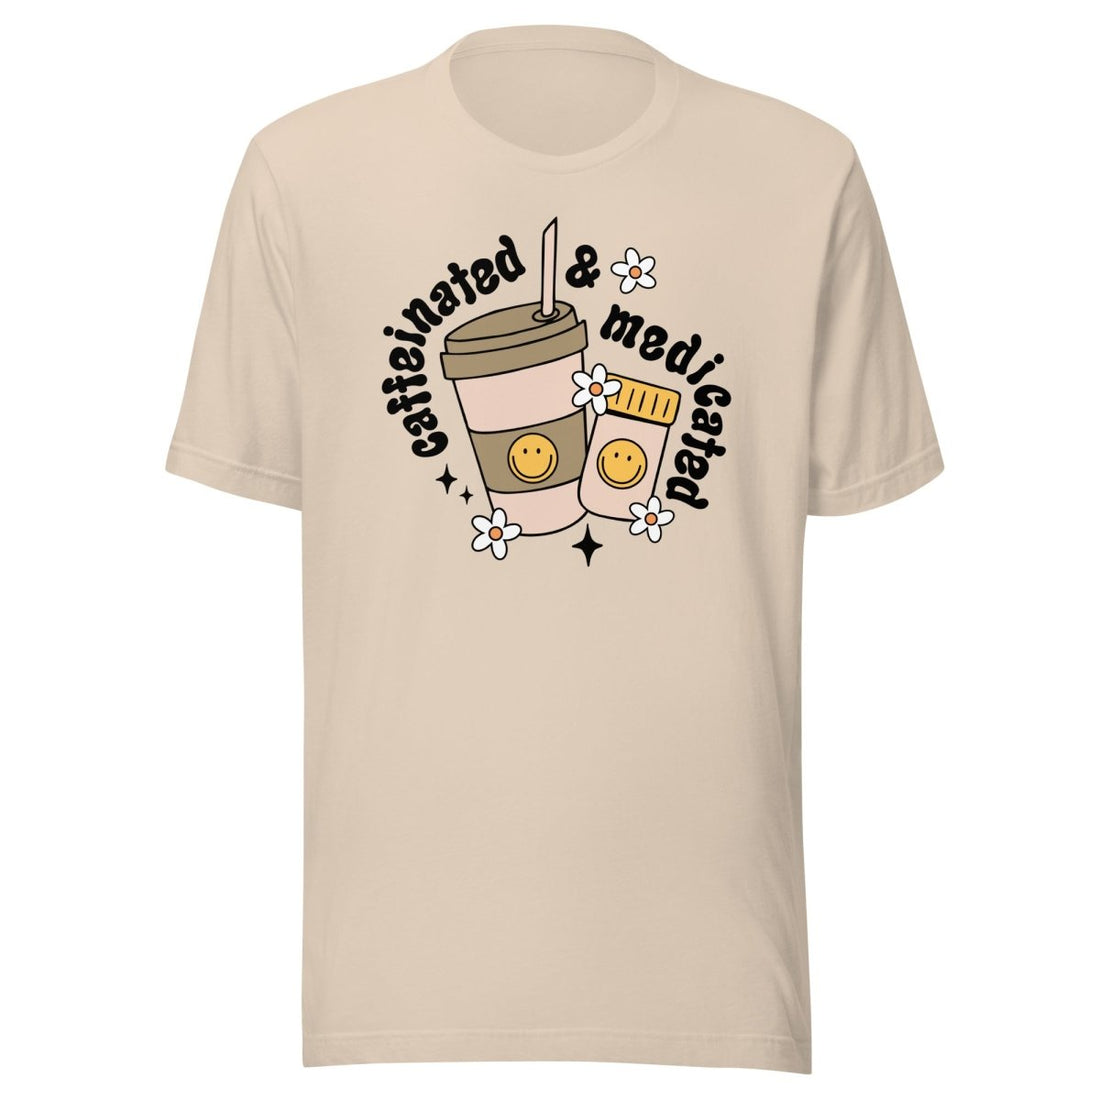 Caffeinated &amp; Medicated Unisex t-shirt - Cotton Plus Cream